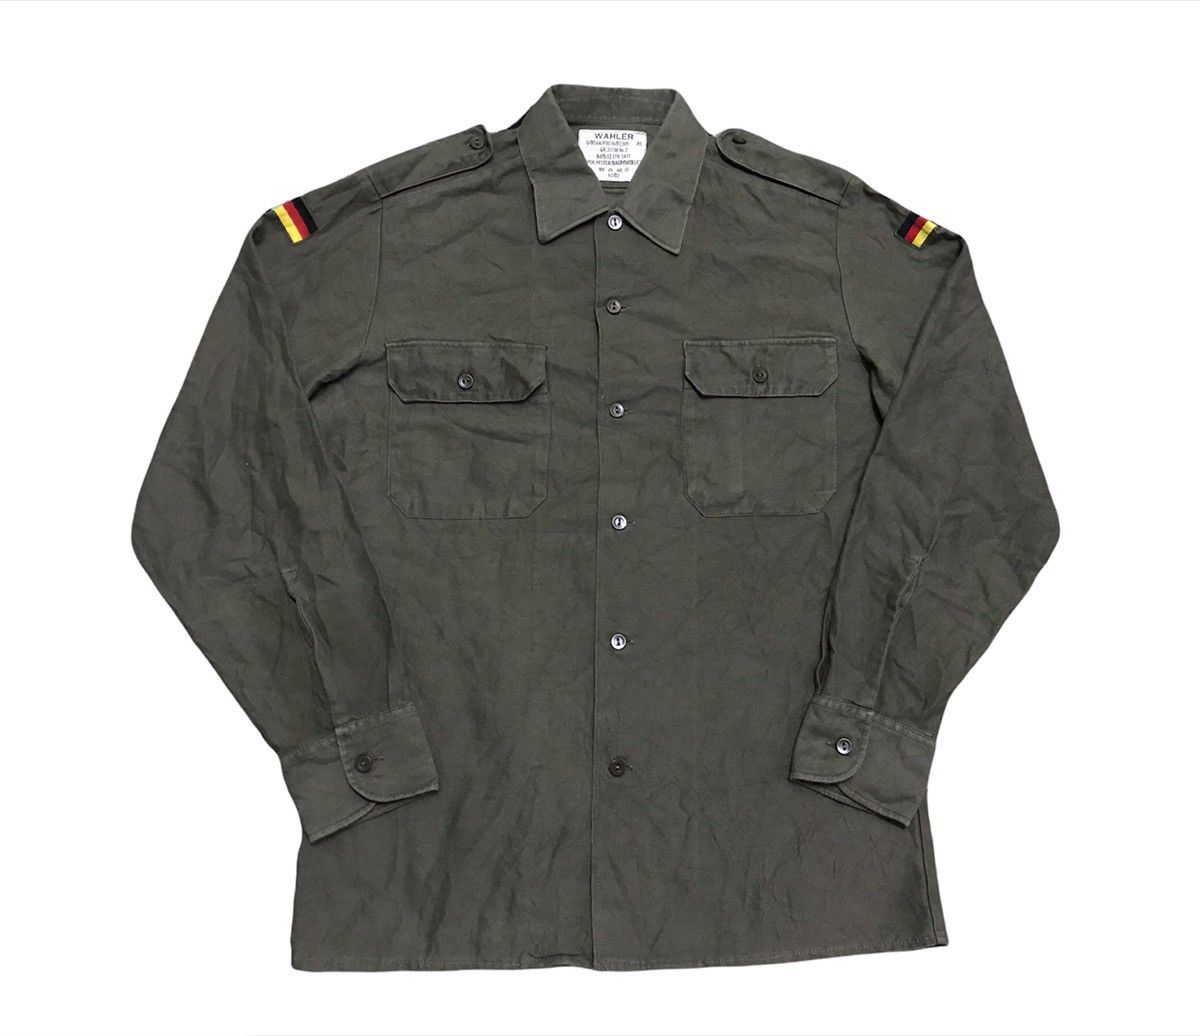 Vintage Vintage German army shirts | Grailed